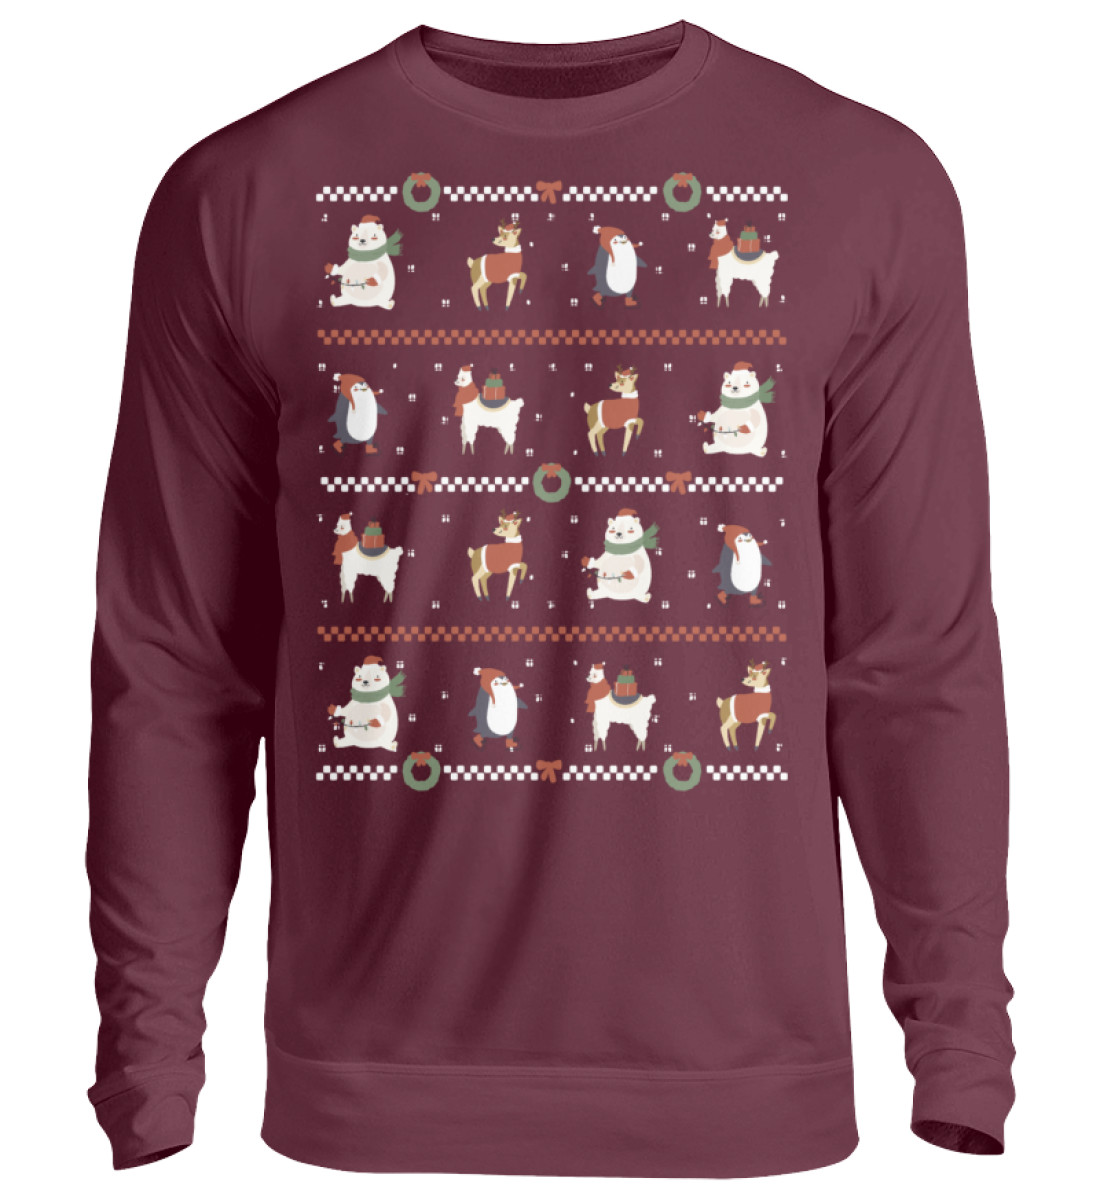 Sweatshirt "Frohe Weihnachten" - mit weihnachtlichem Muster - Unisex Pullover-839